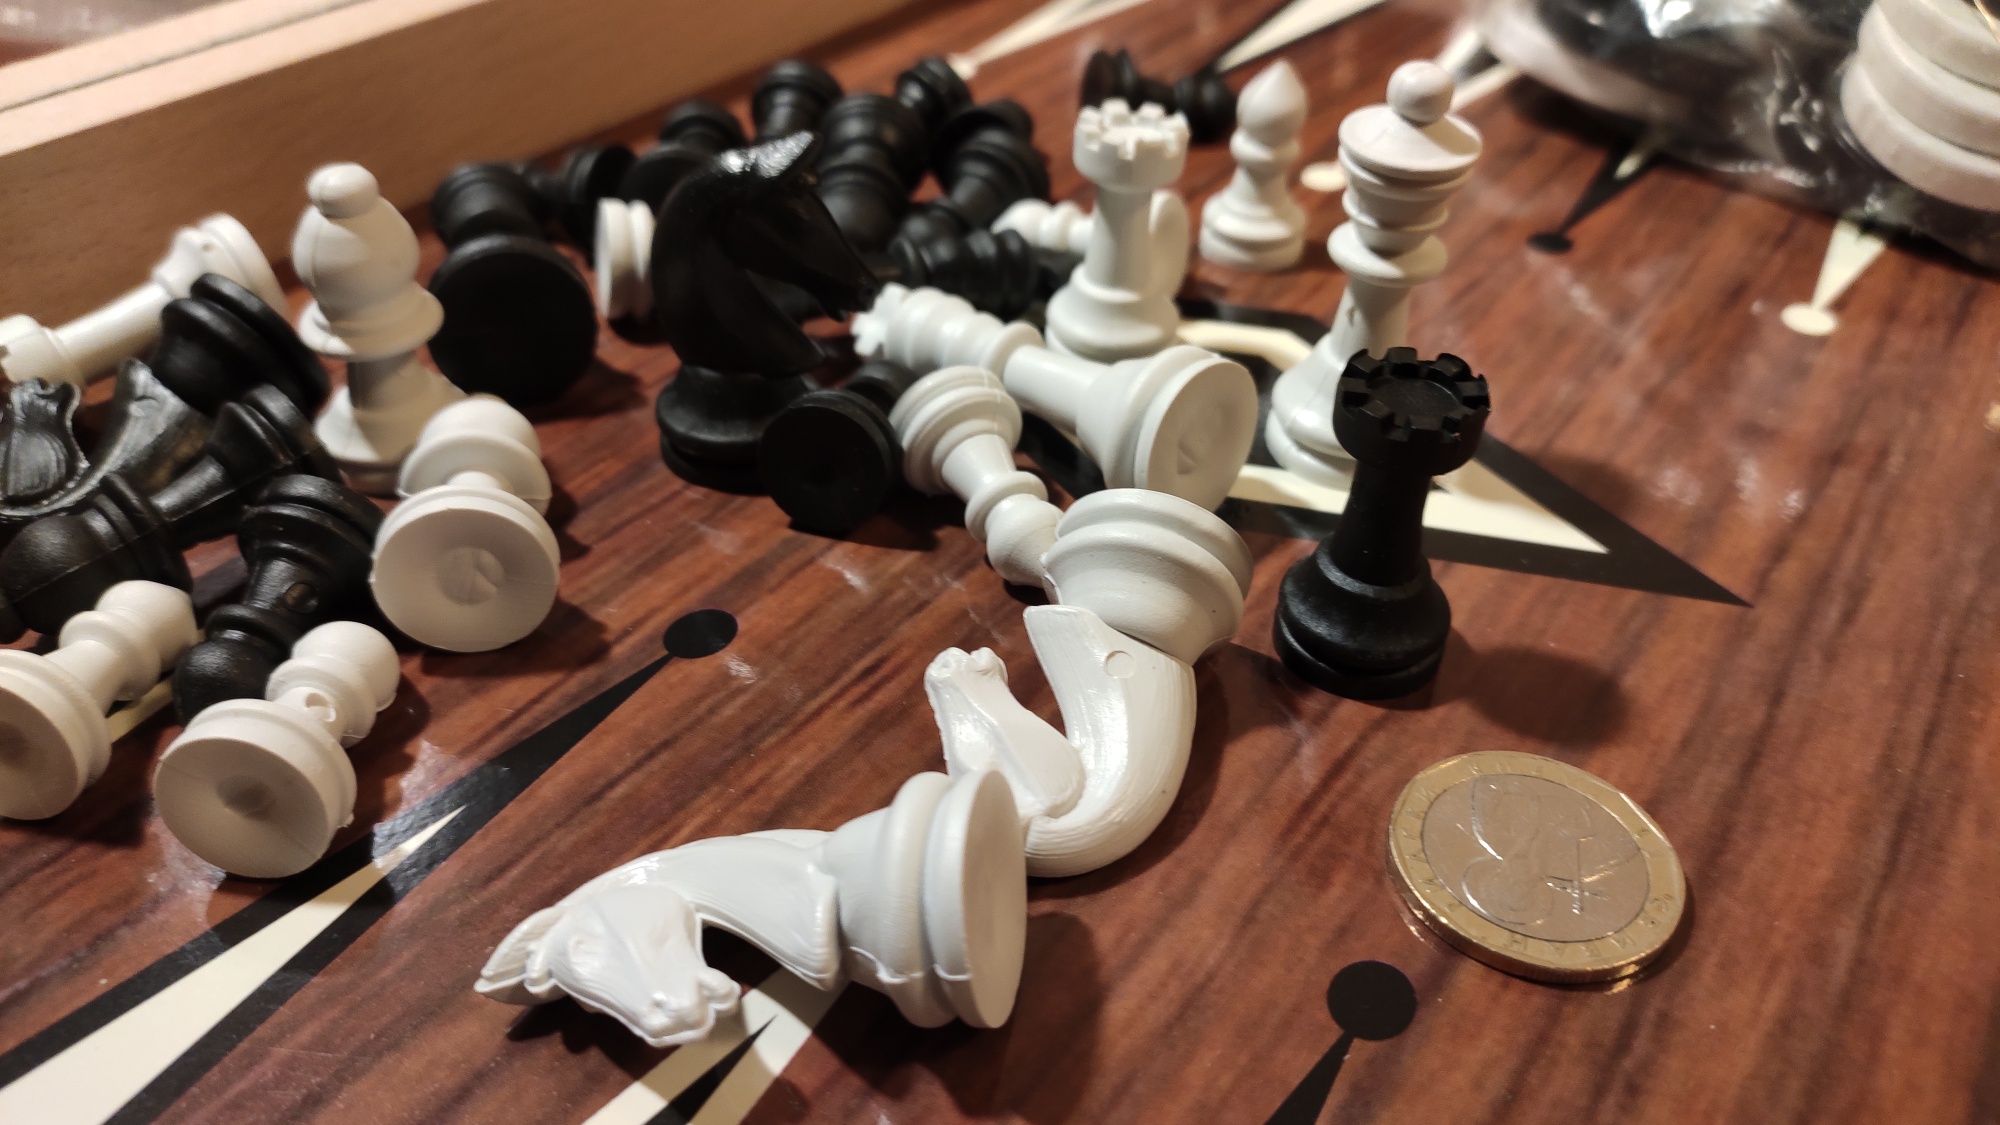 Шах и табла комплект в дървена кутия